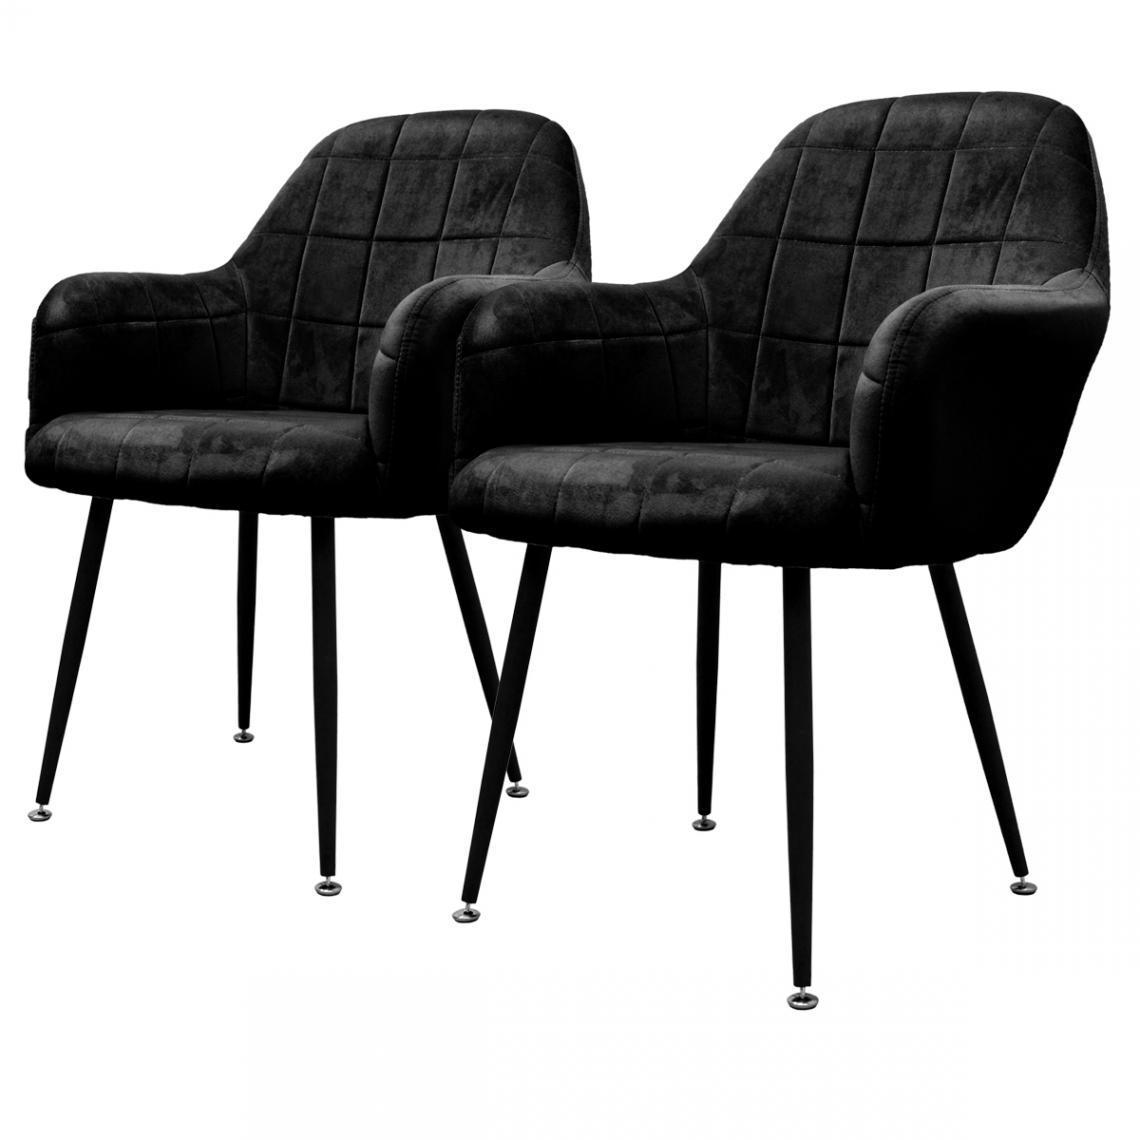 Ecd Germany - 2x Chaises de salle à manger salon tendance rétro fauteuil velours pieds métalliques noir - Chaises